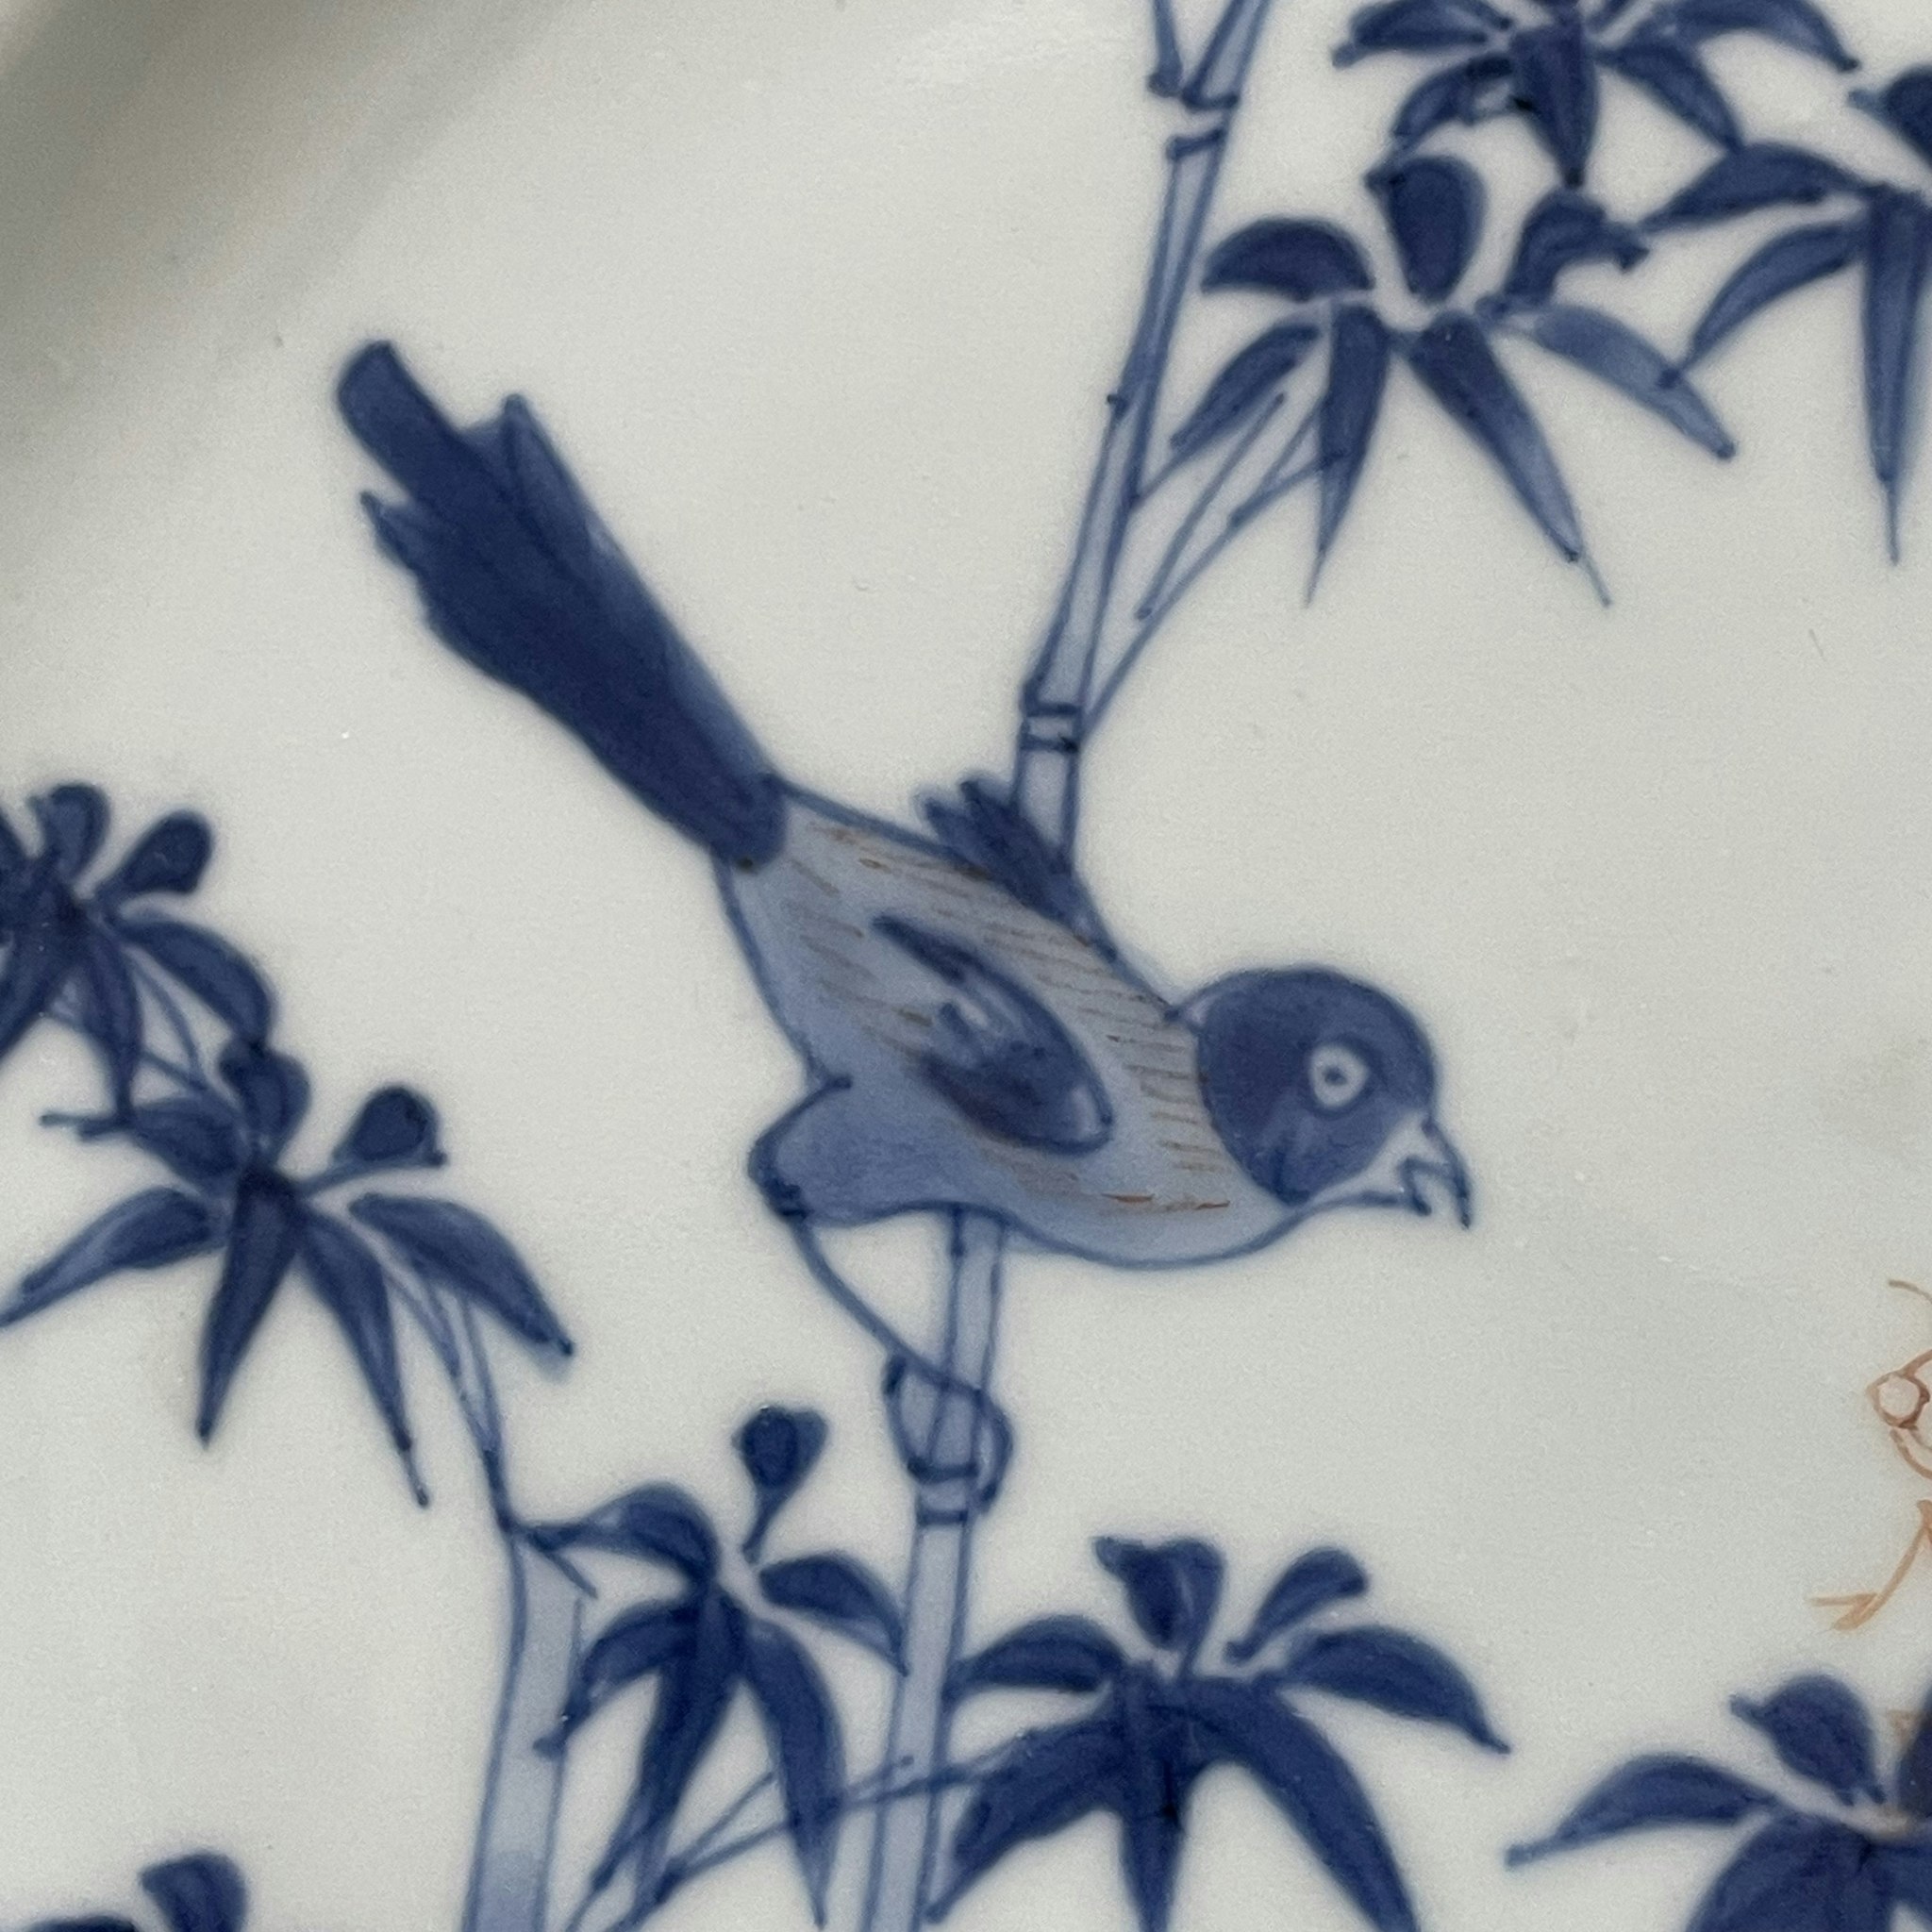 Chinese Antique Porcelain Plate, 18th C Yongzheng / Qianlong period #1770